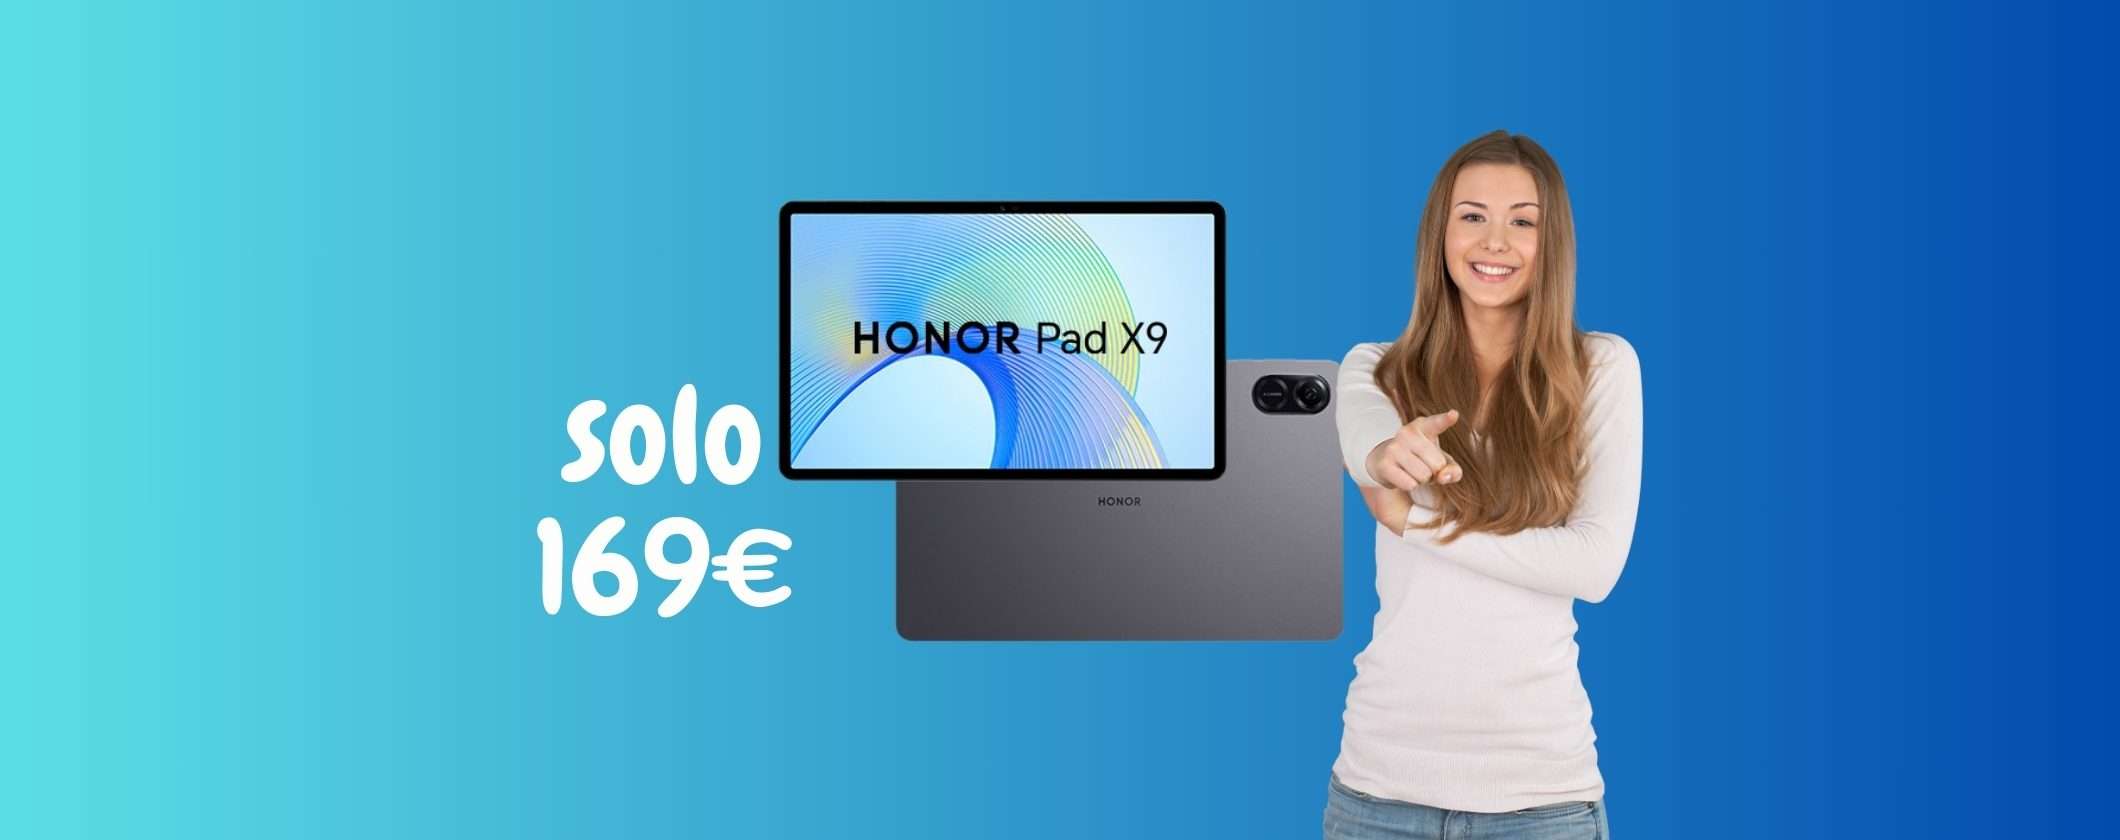 Honor Pad X9: il tablet PERFETTO a soli 169€